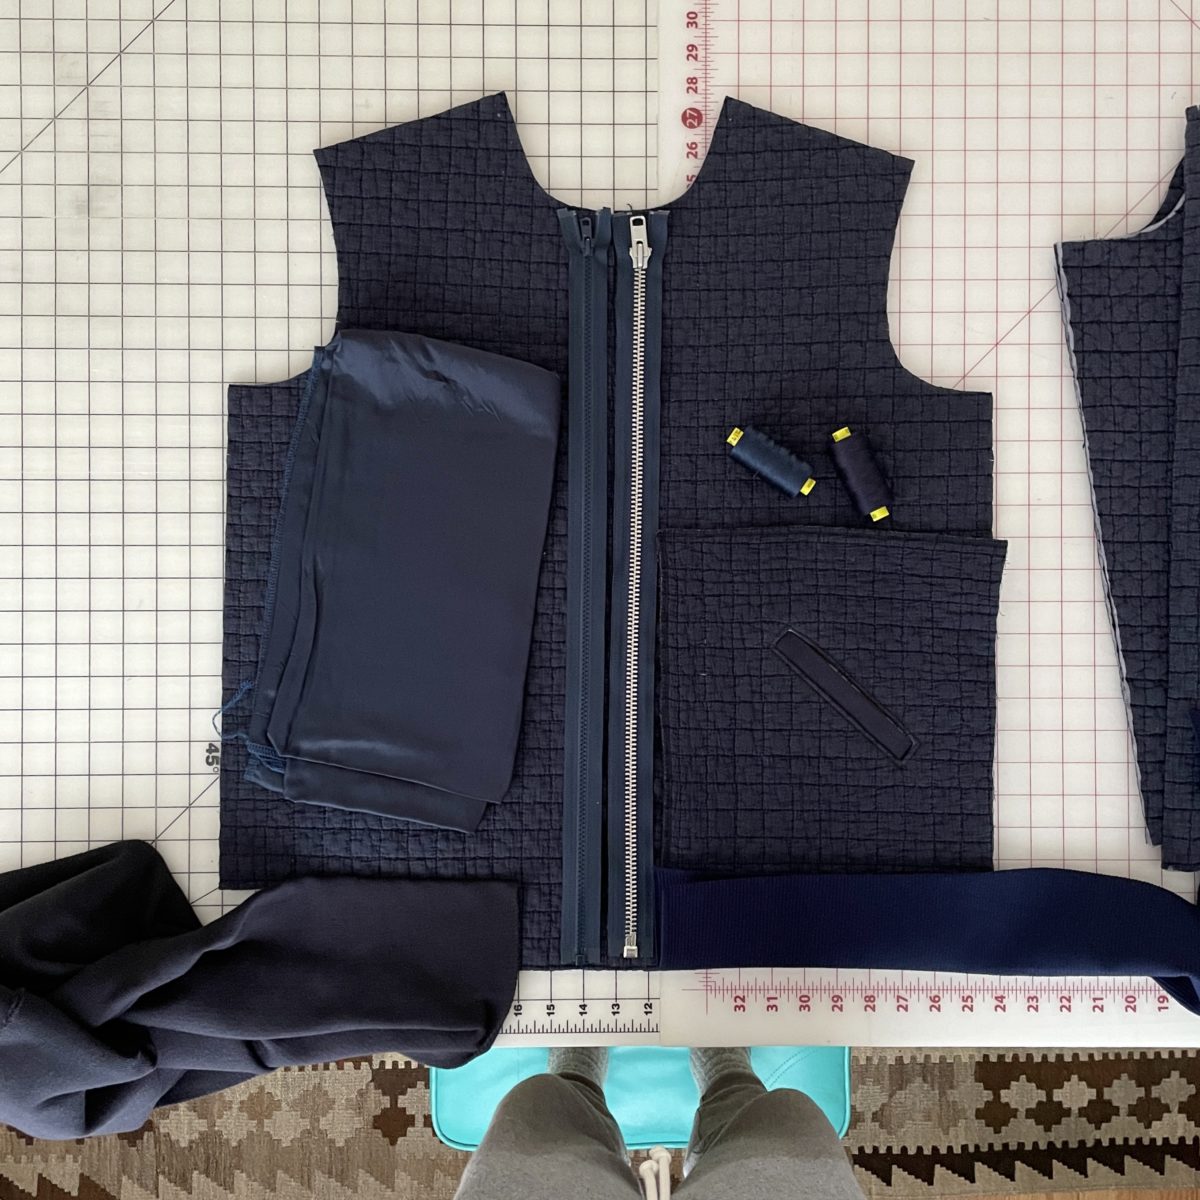 Making A Louis Vuitton Bulletproof Vest